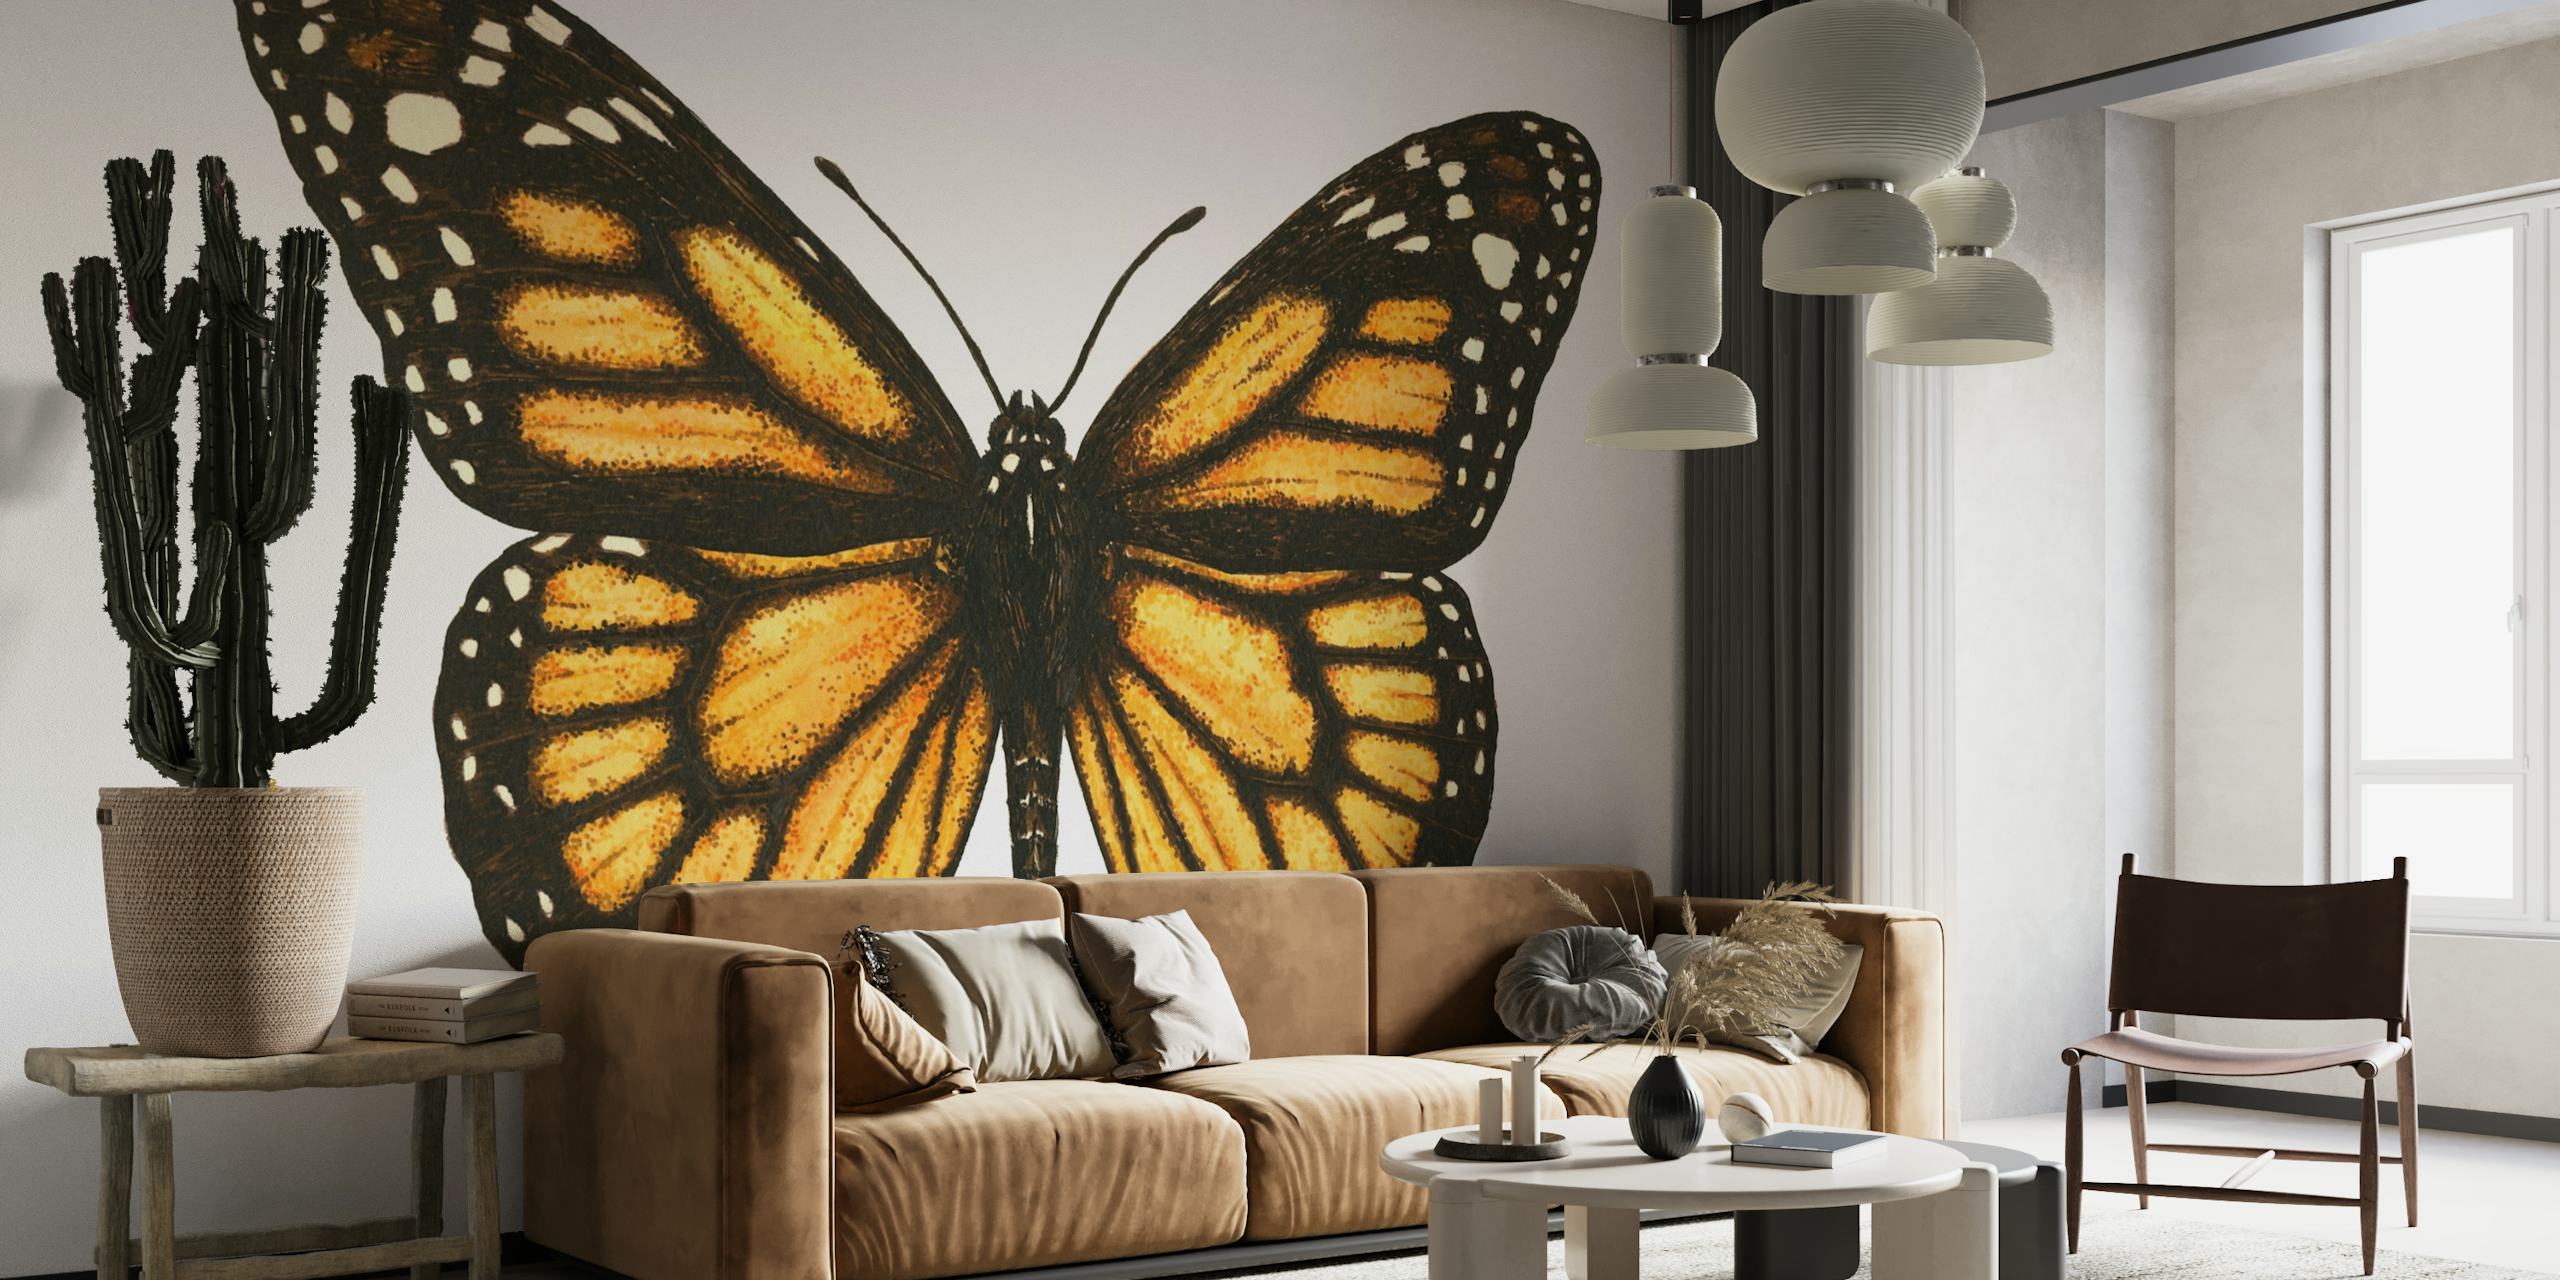 Monarch butterfly wallpaper